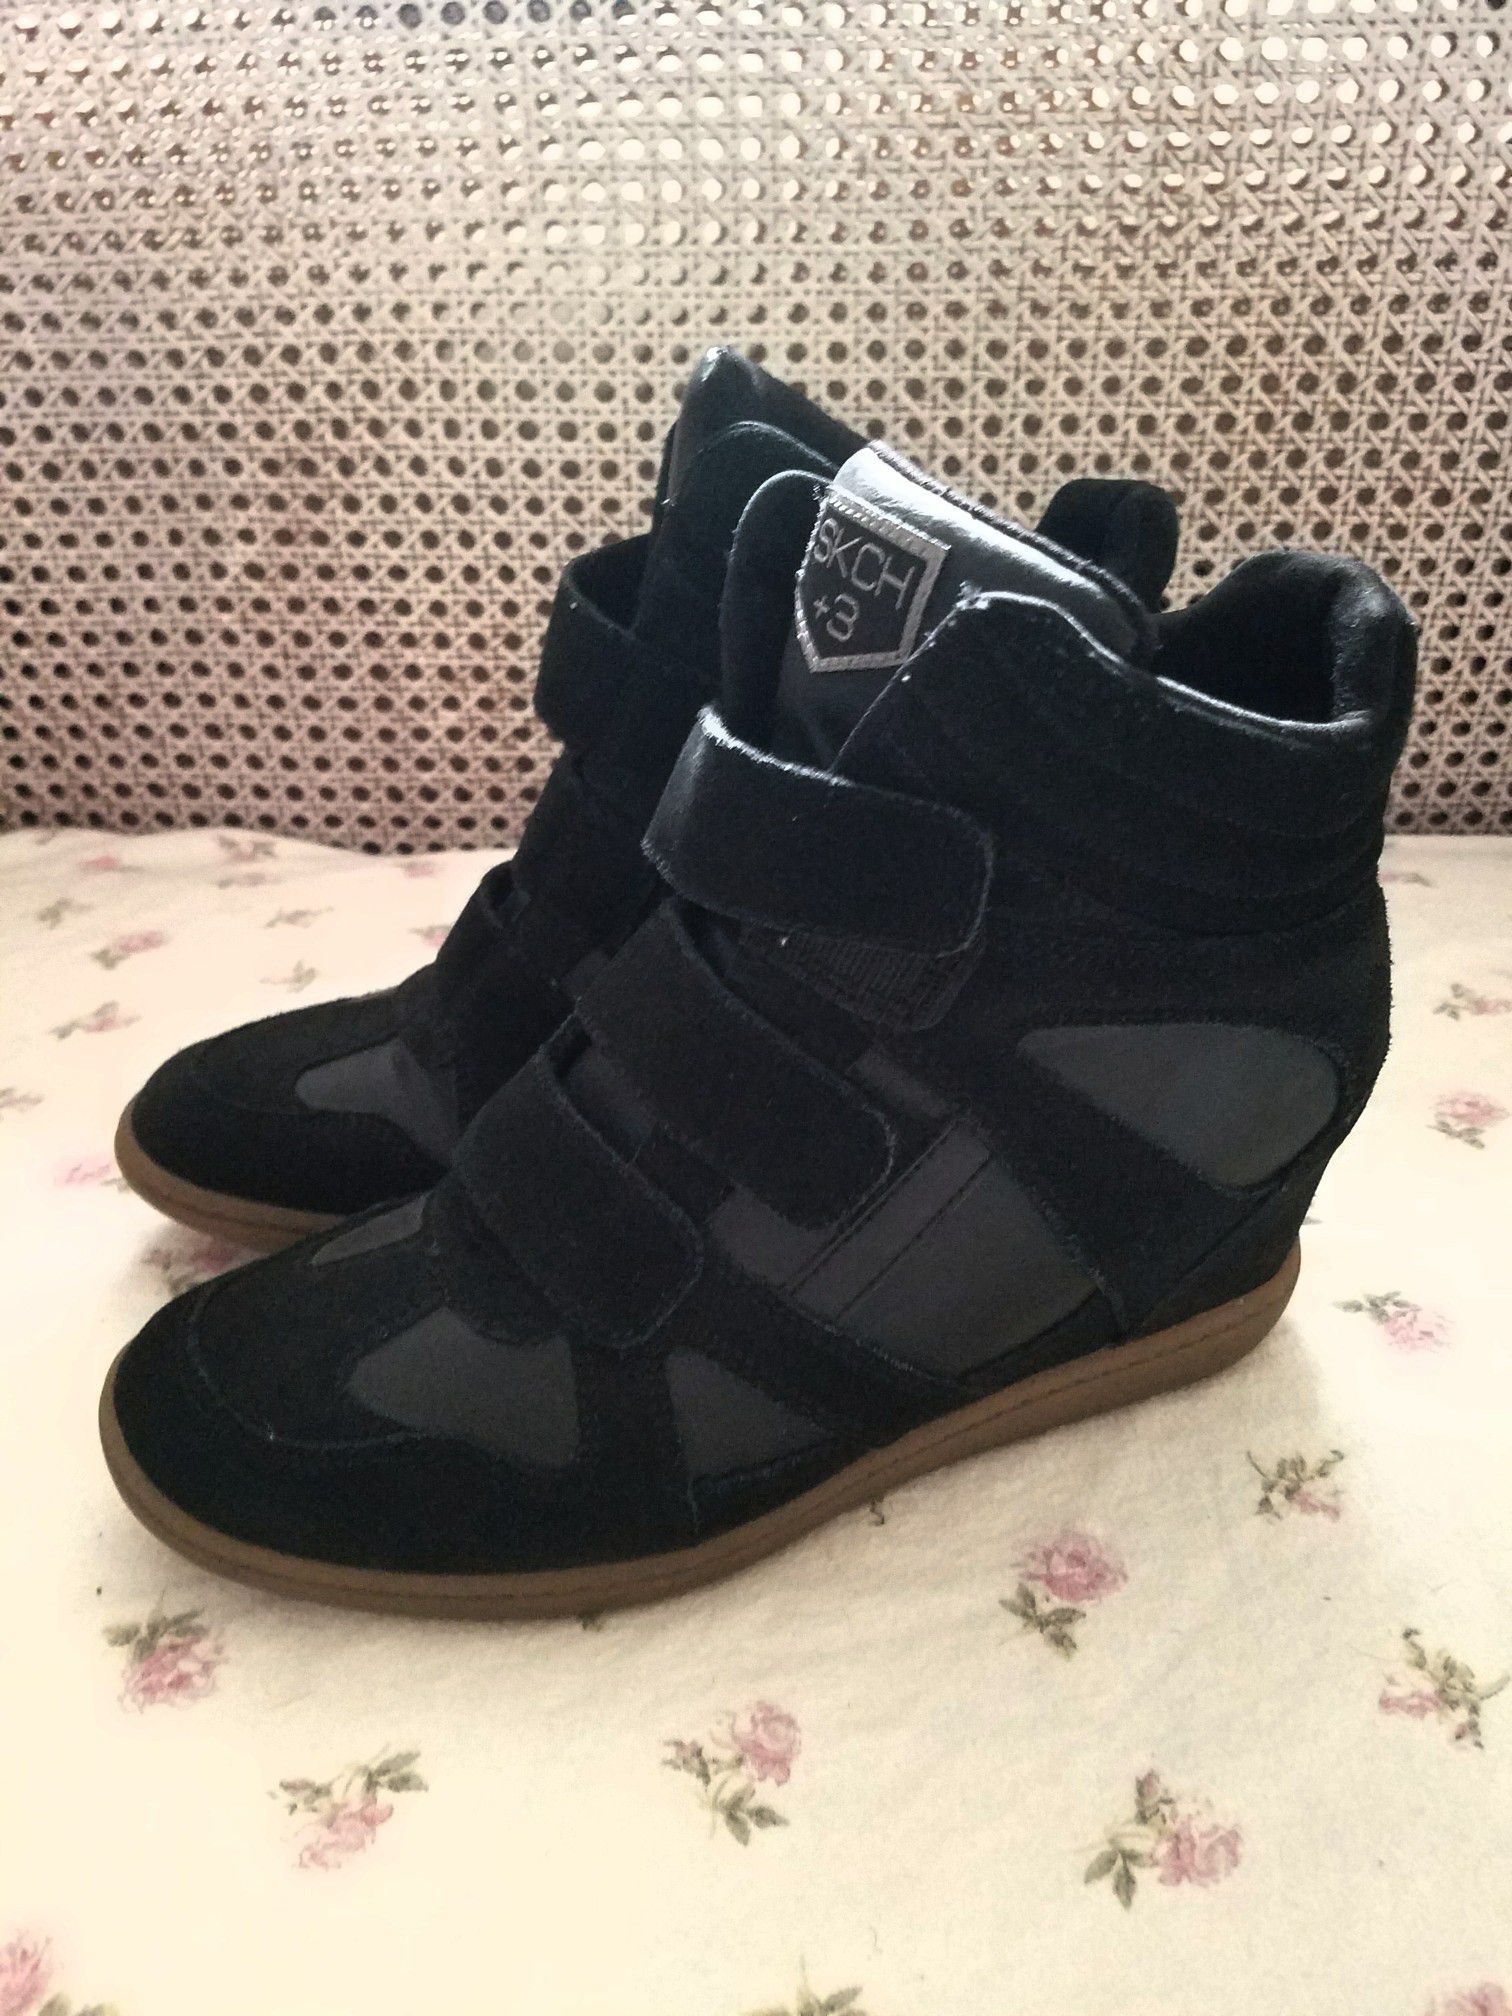 Splendor Prelude tilstødende SKECHERS SKCH+3 Black Leather Suede Hidden Wedge Shoes Boots High Tops Size  8.5 for Sale in DeLand, FL - OfferUp